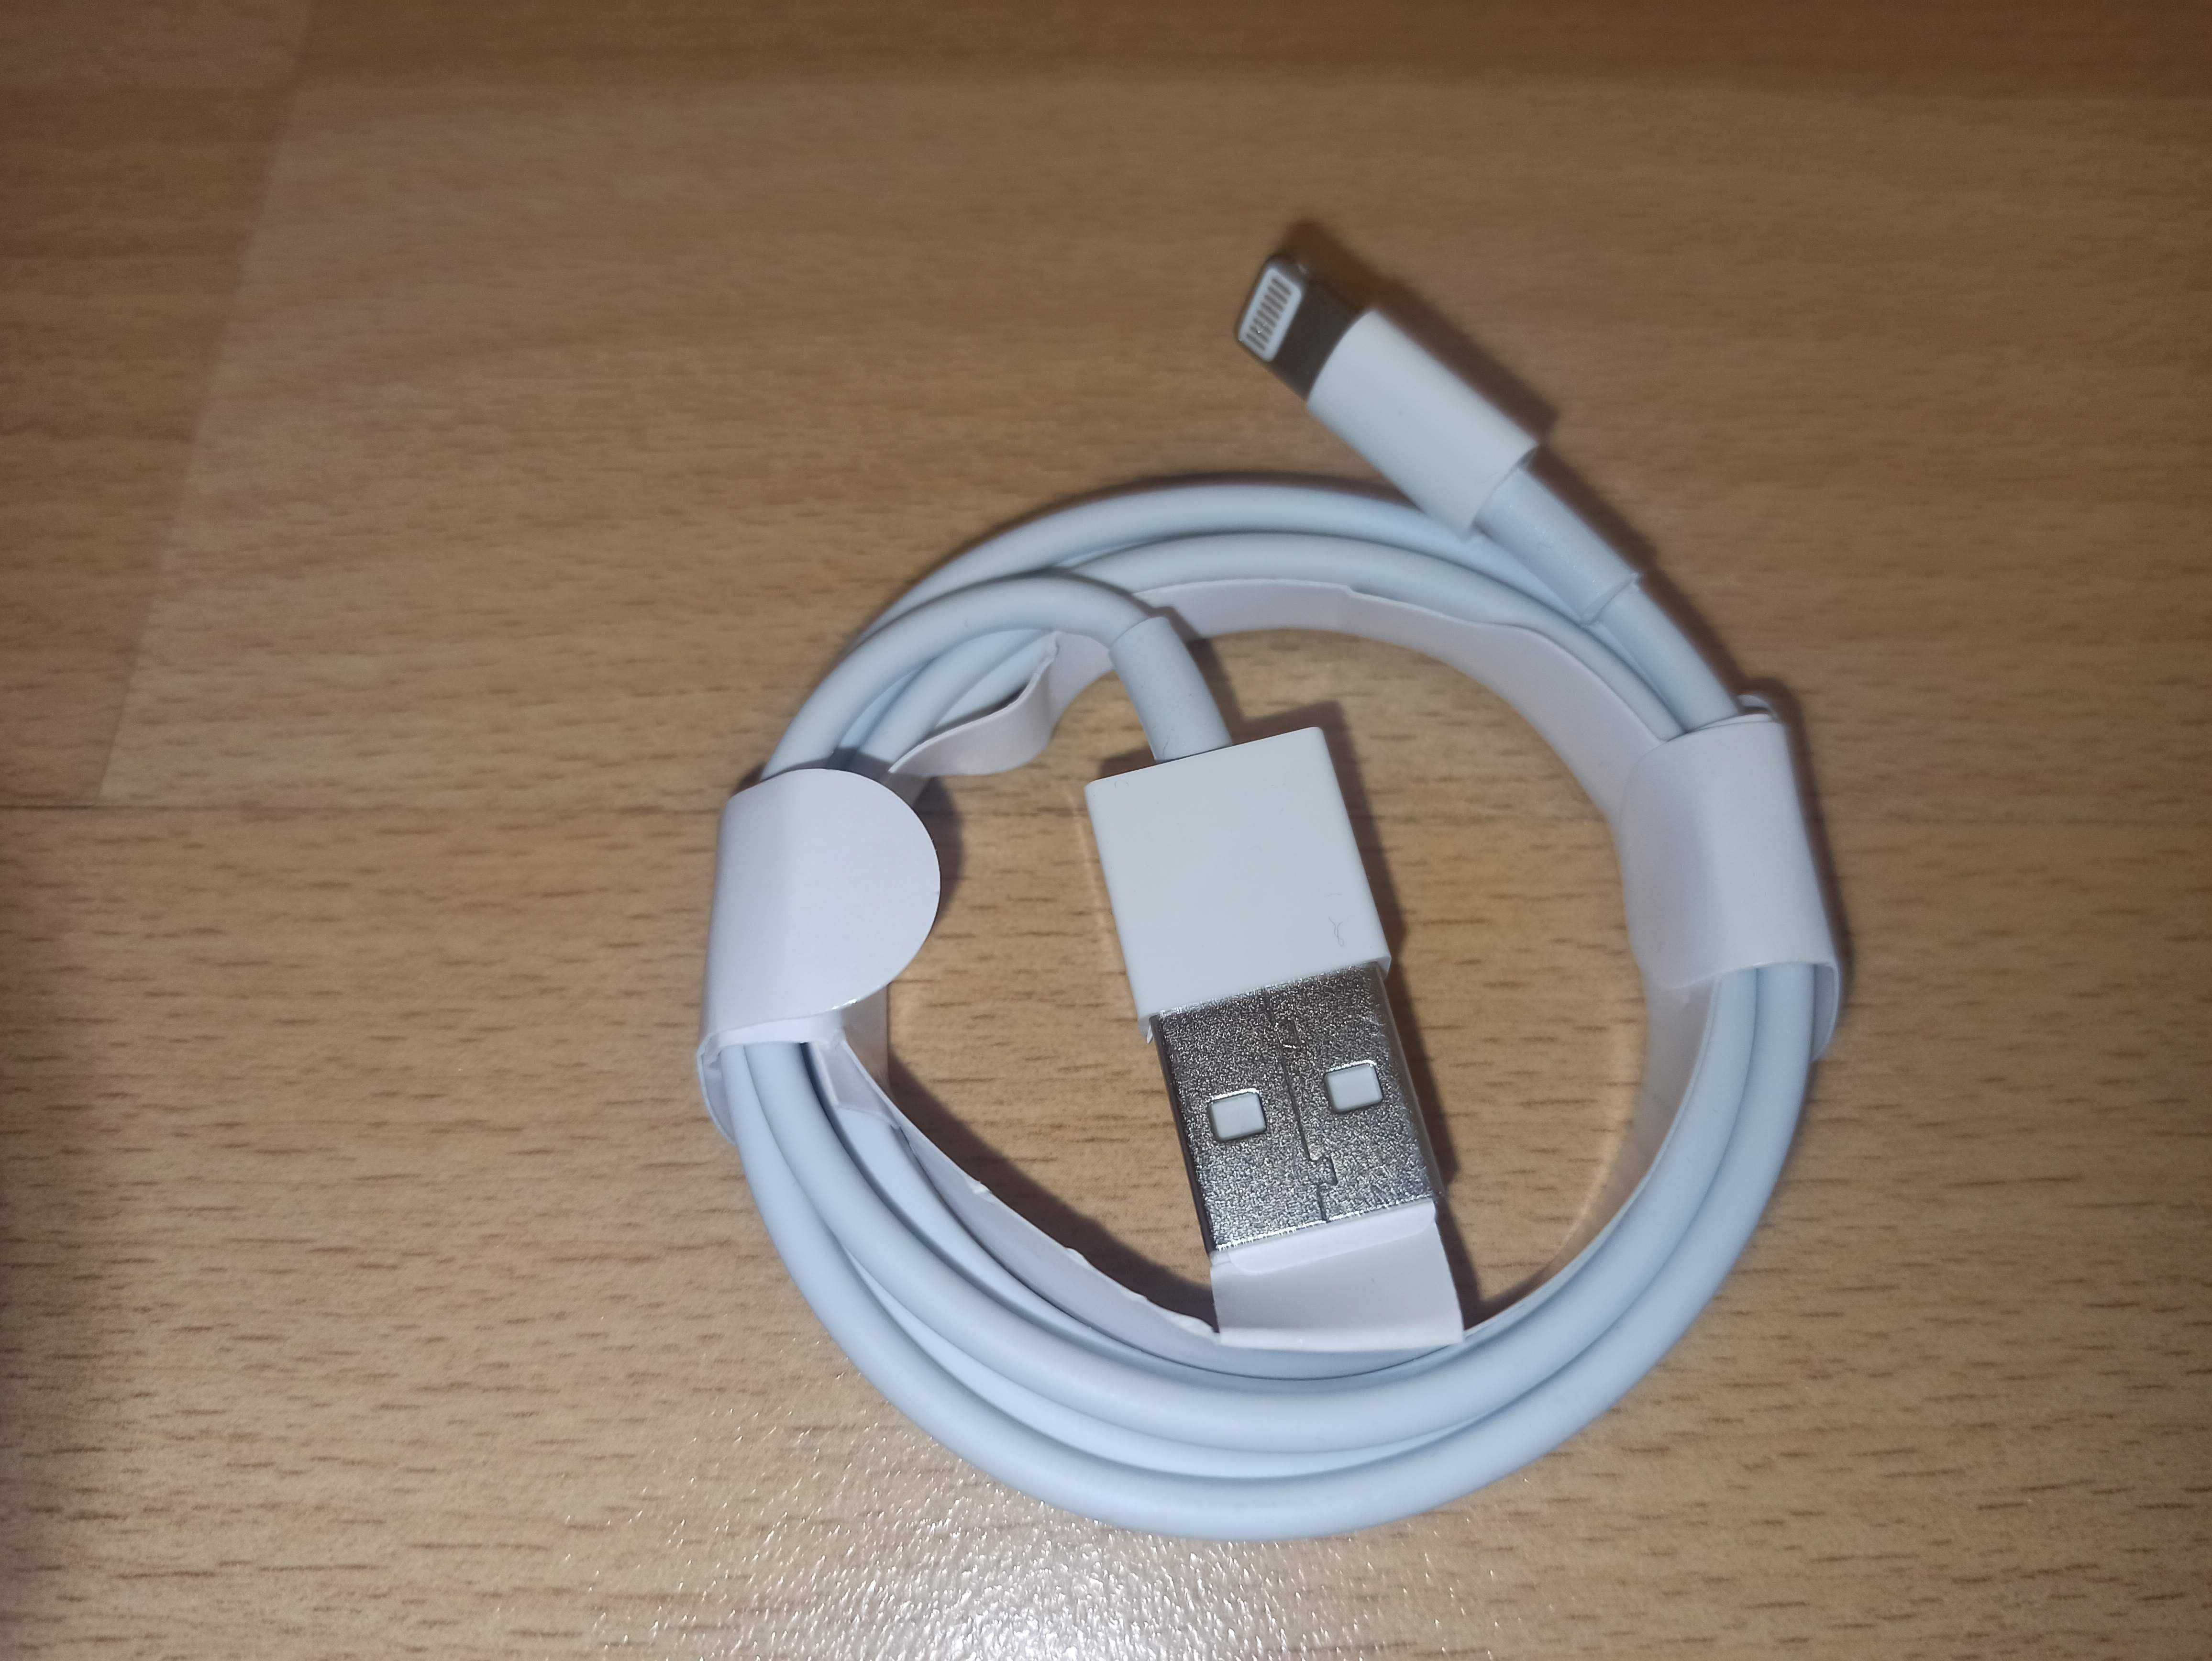 Кабель Lightning to USB и зарядное устройство из комплекта  Iphone 7